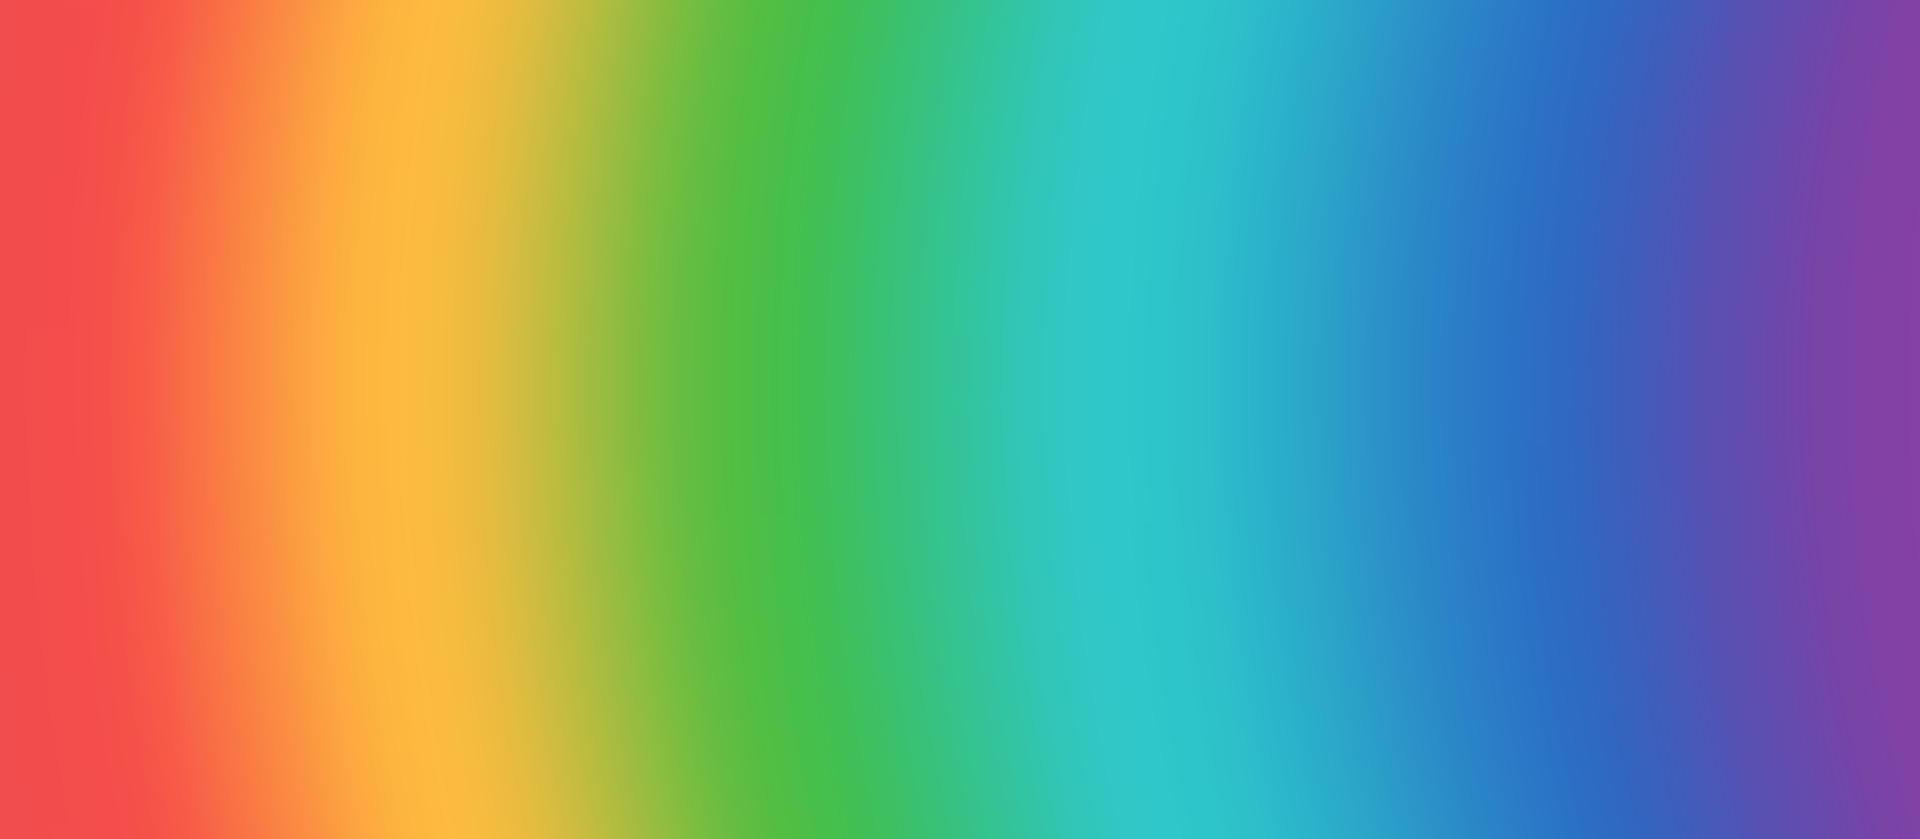 fondo abstracto del arco iris con espacio de copia vector